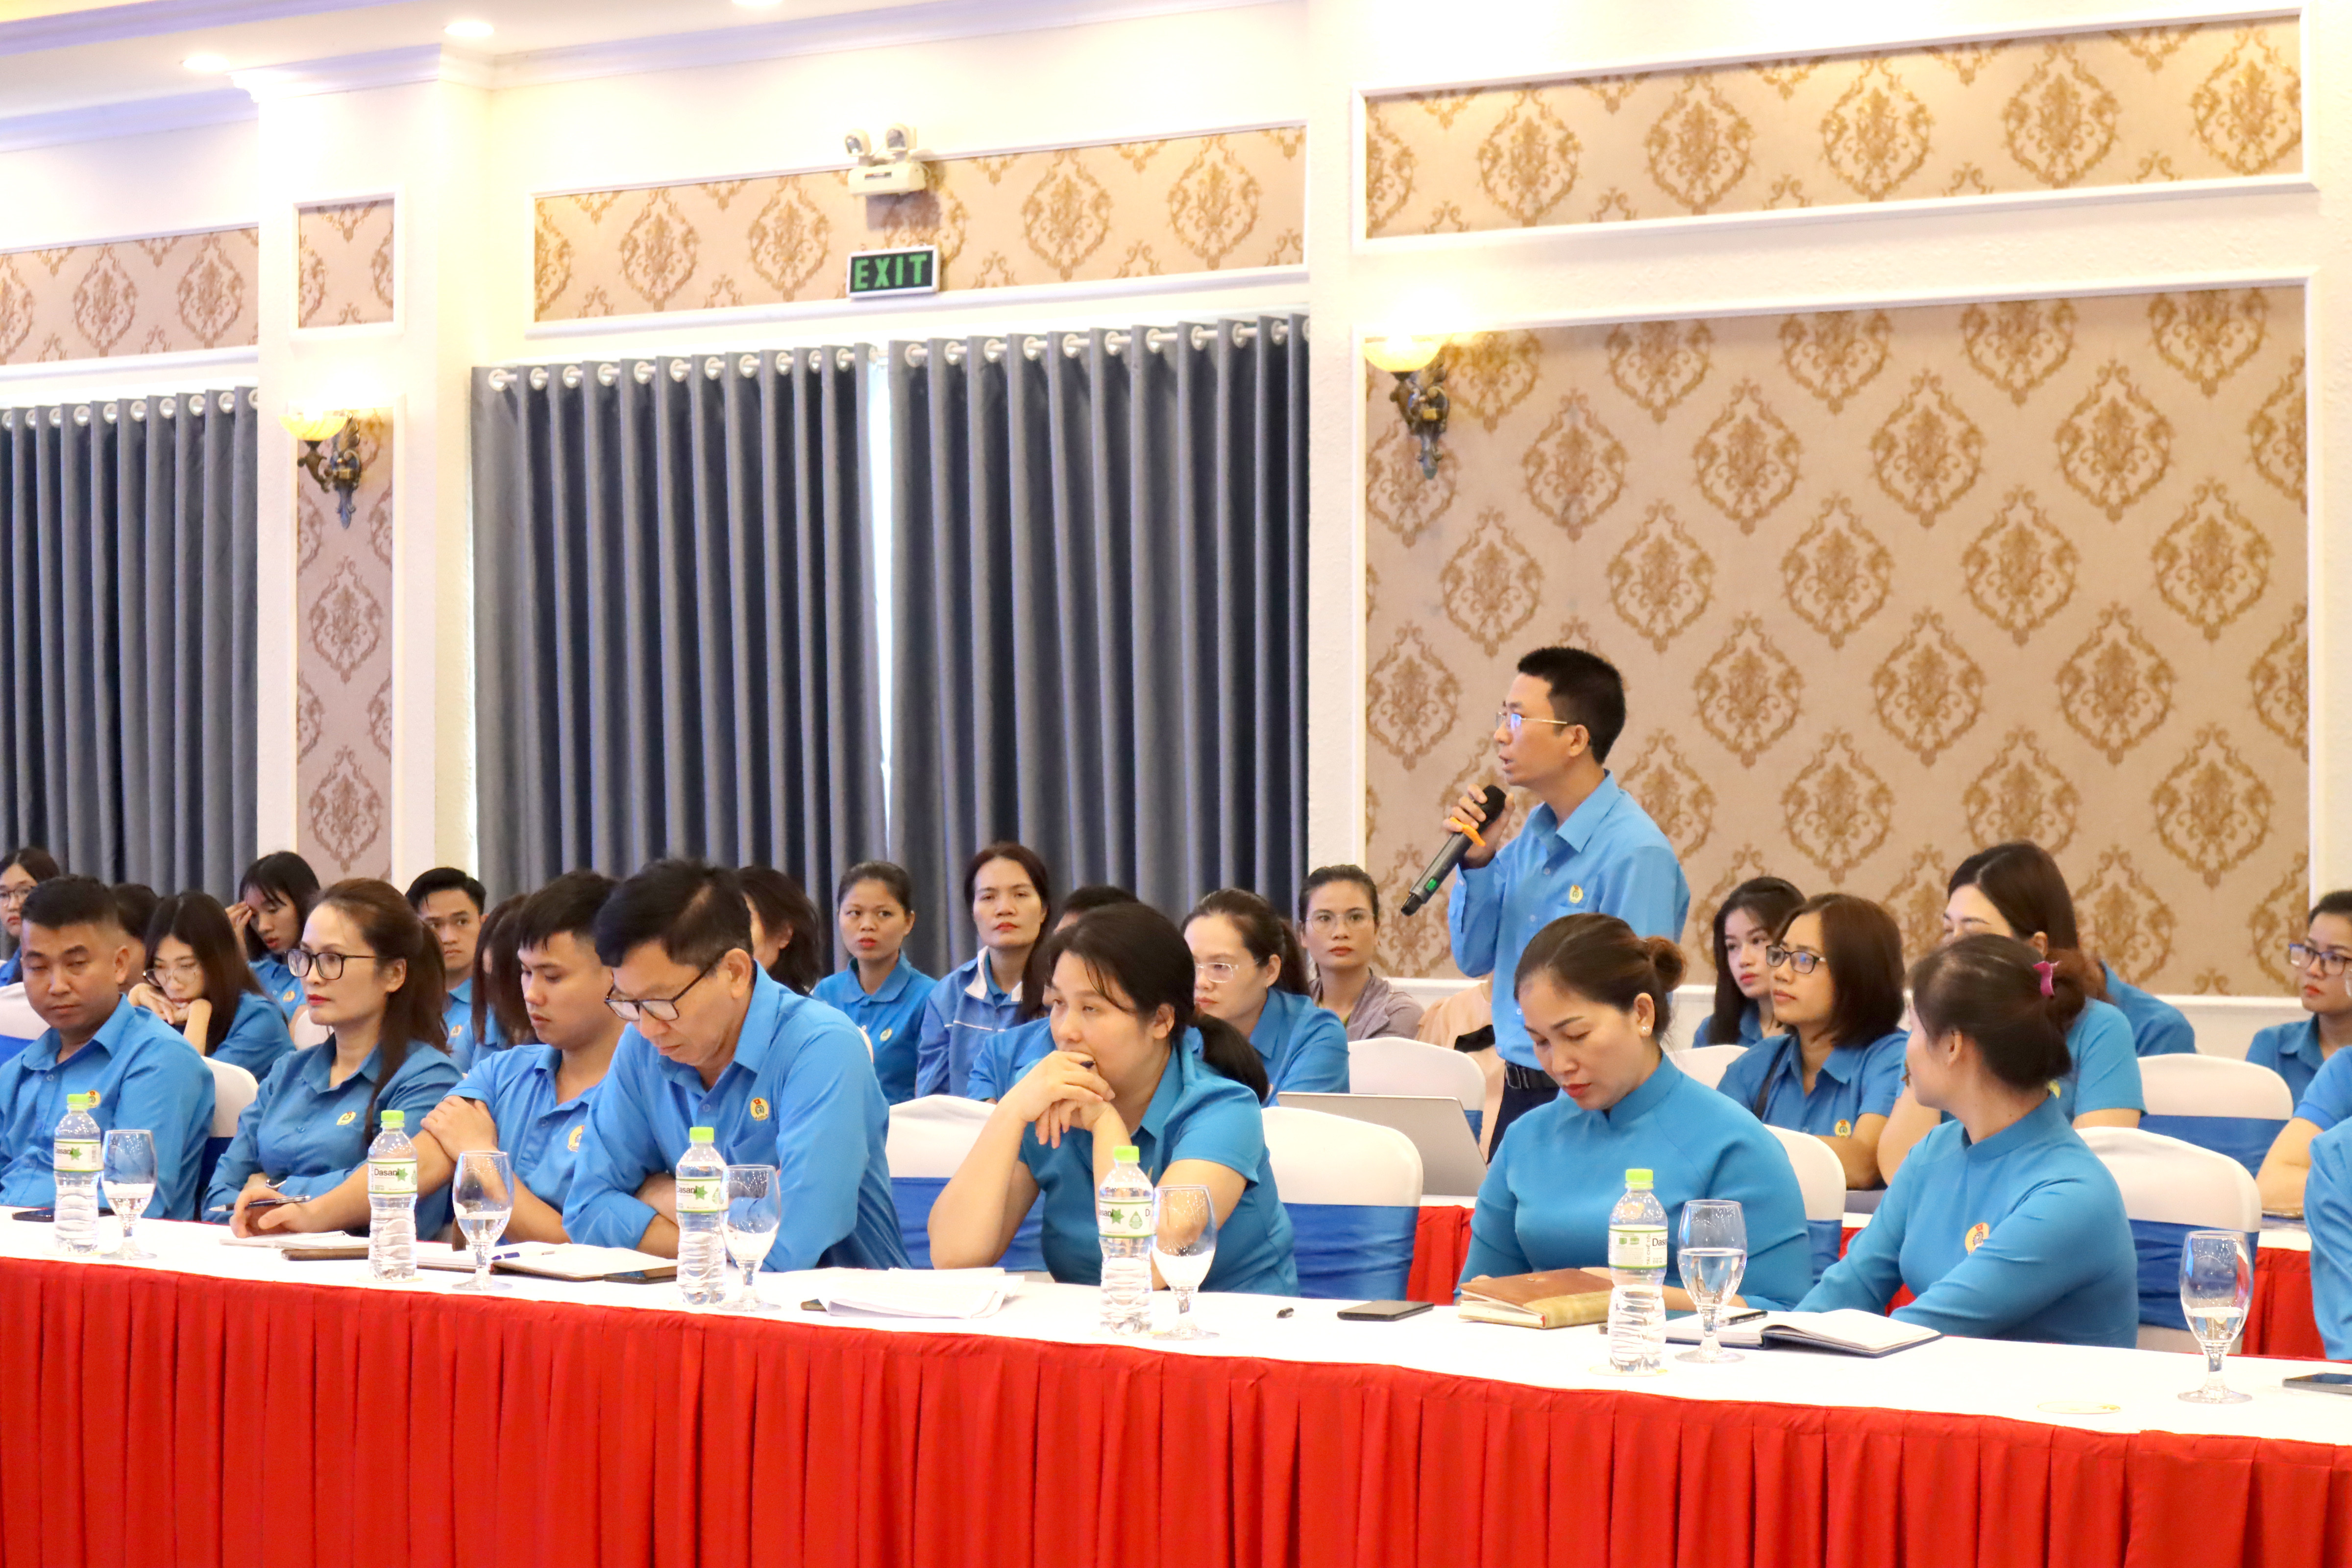 bna_hội nghị gặp mặt cán bộ công đoàn doanh nghiệp Ảnh Diệp ThanhIMG_3841.JPG